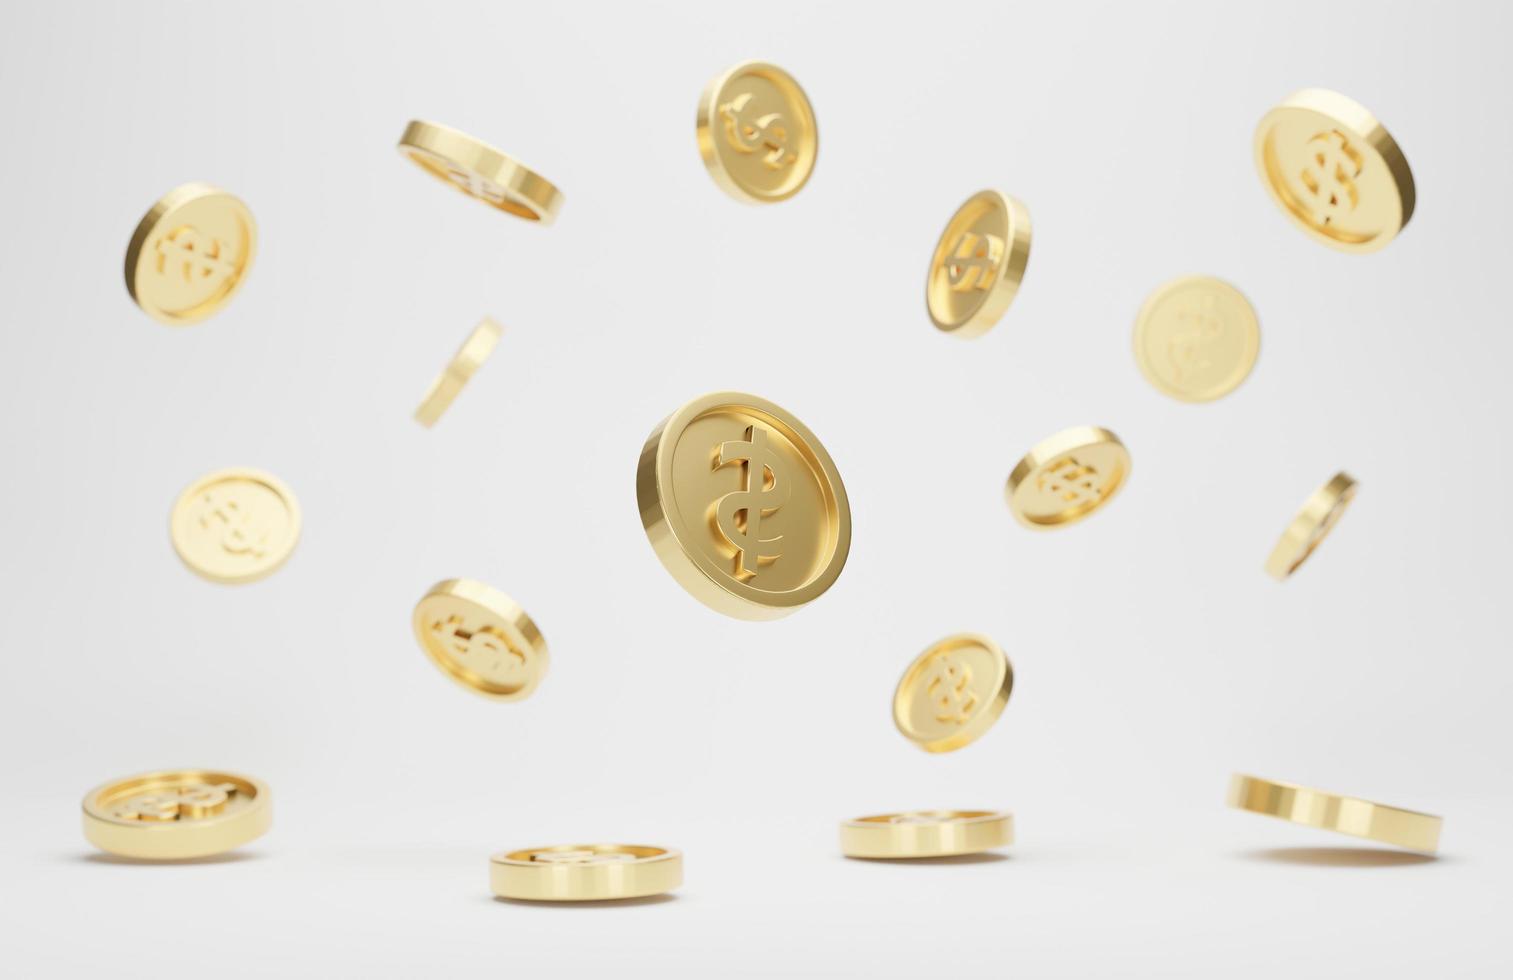 monedas de oro con signo de dólar cayendo o volando aisladas sobre fondo blanco. concepto de jackpot o casino poke. representación 3d foto